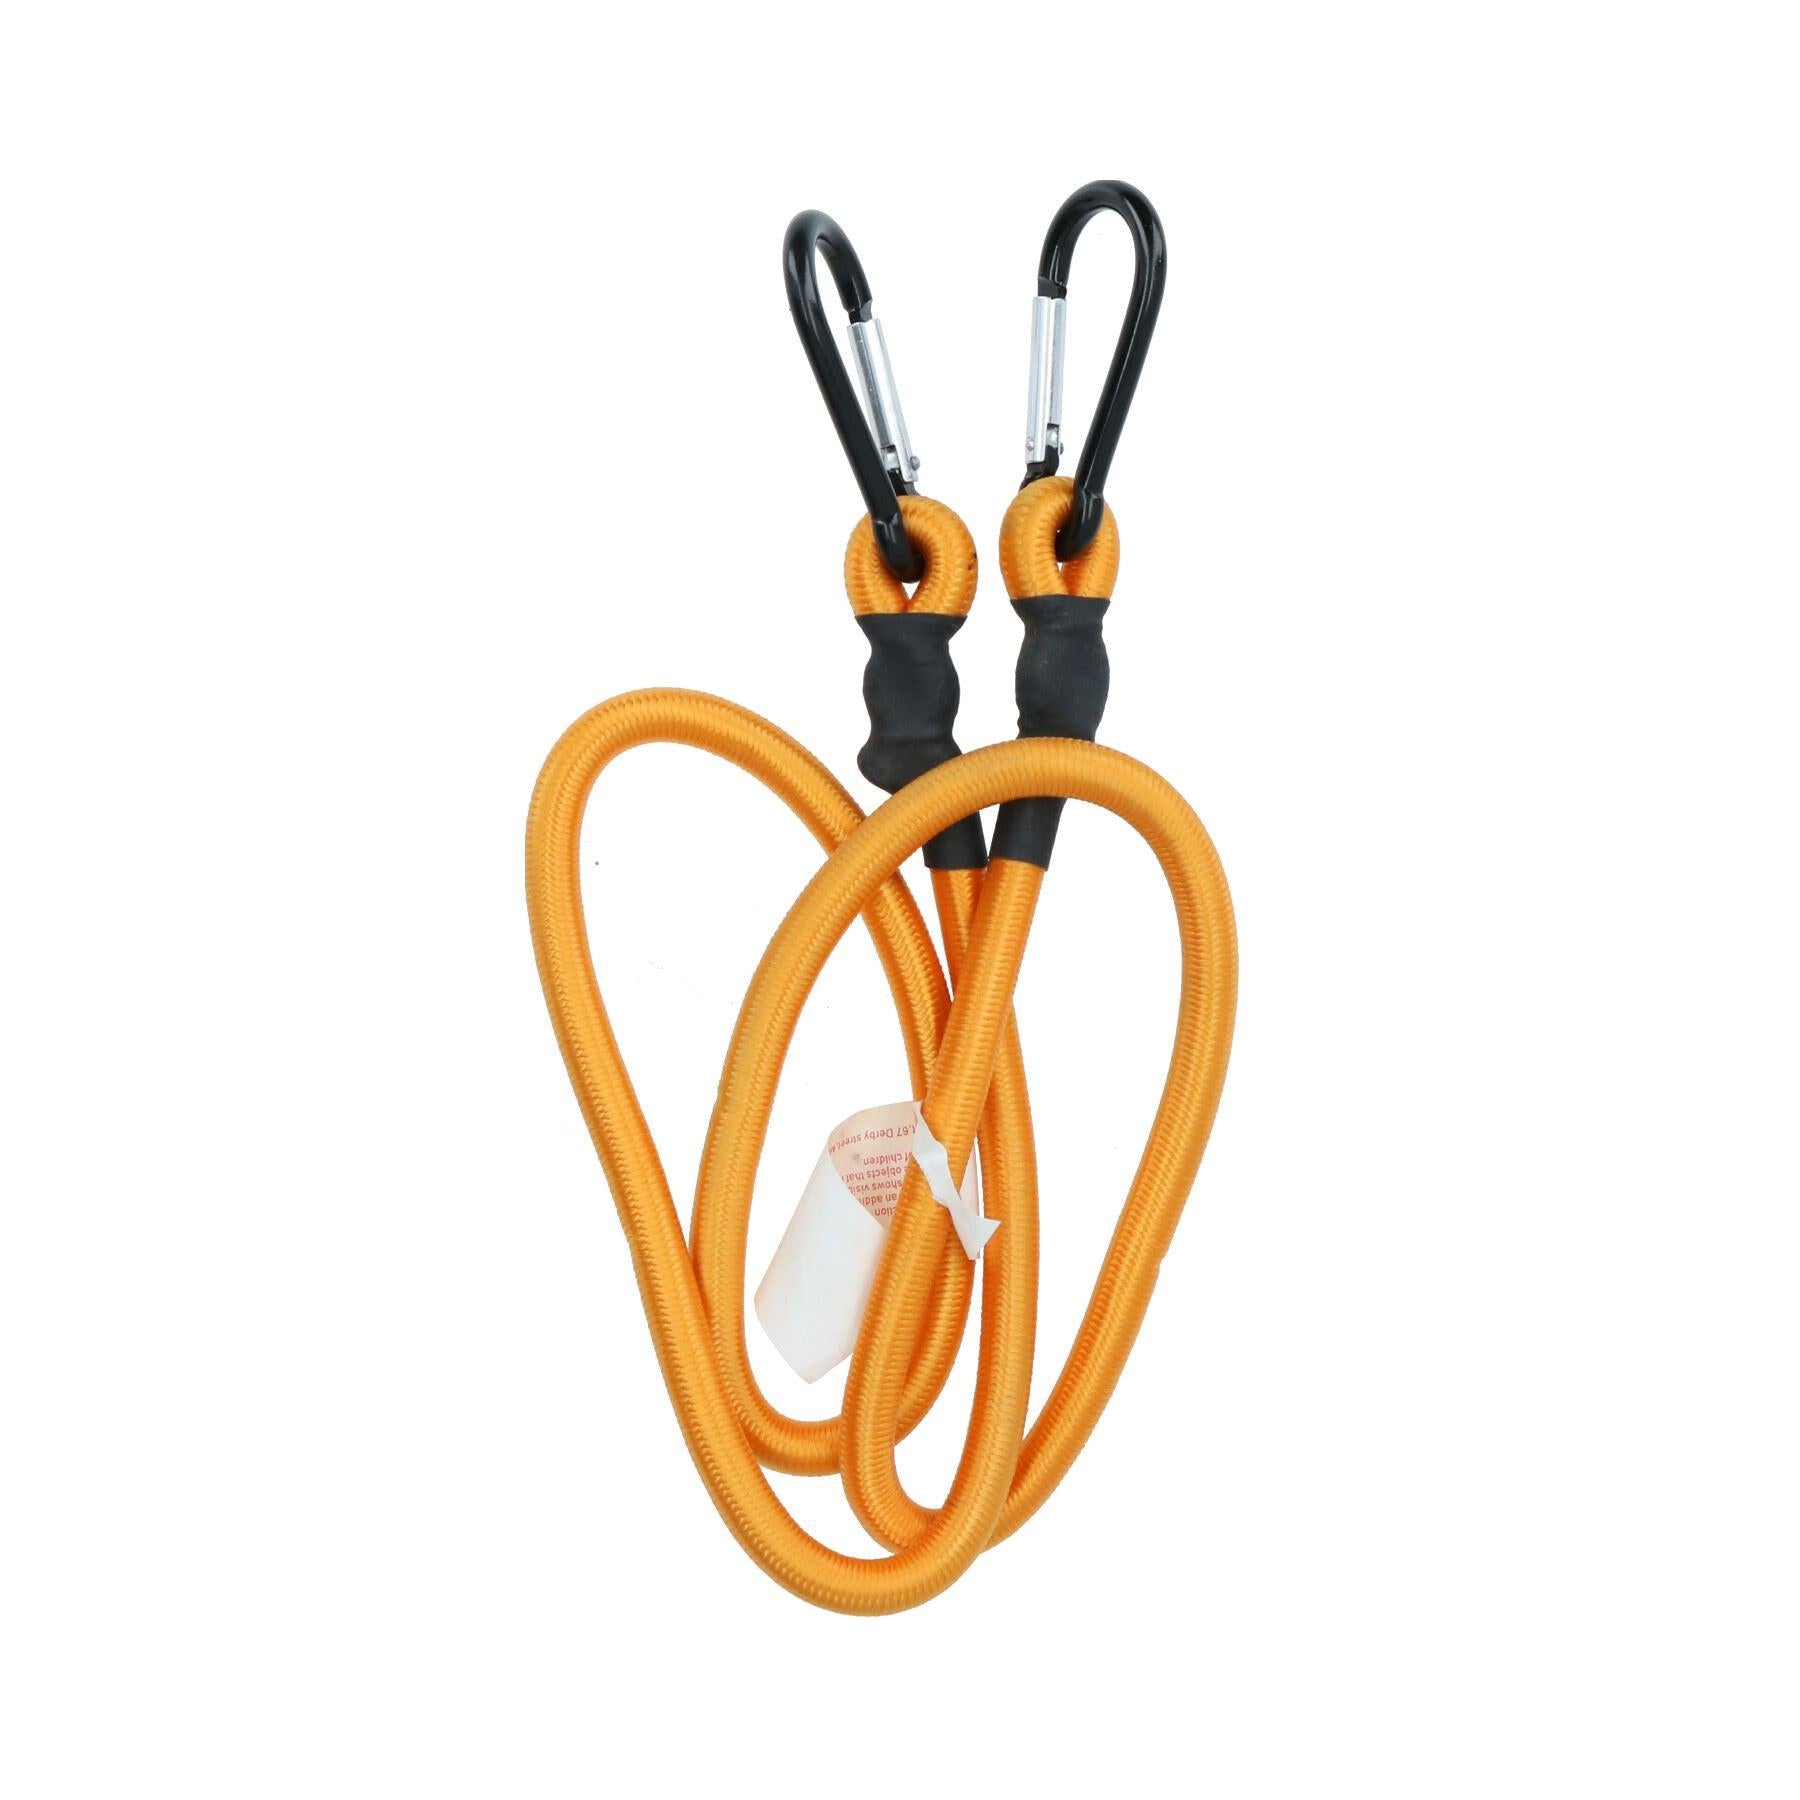 Buy Tying rope online